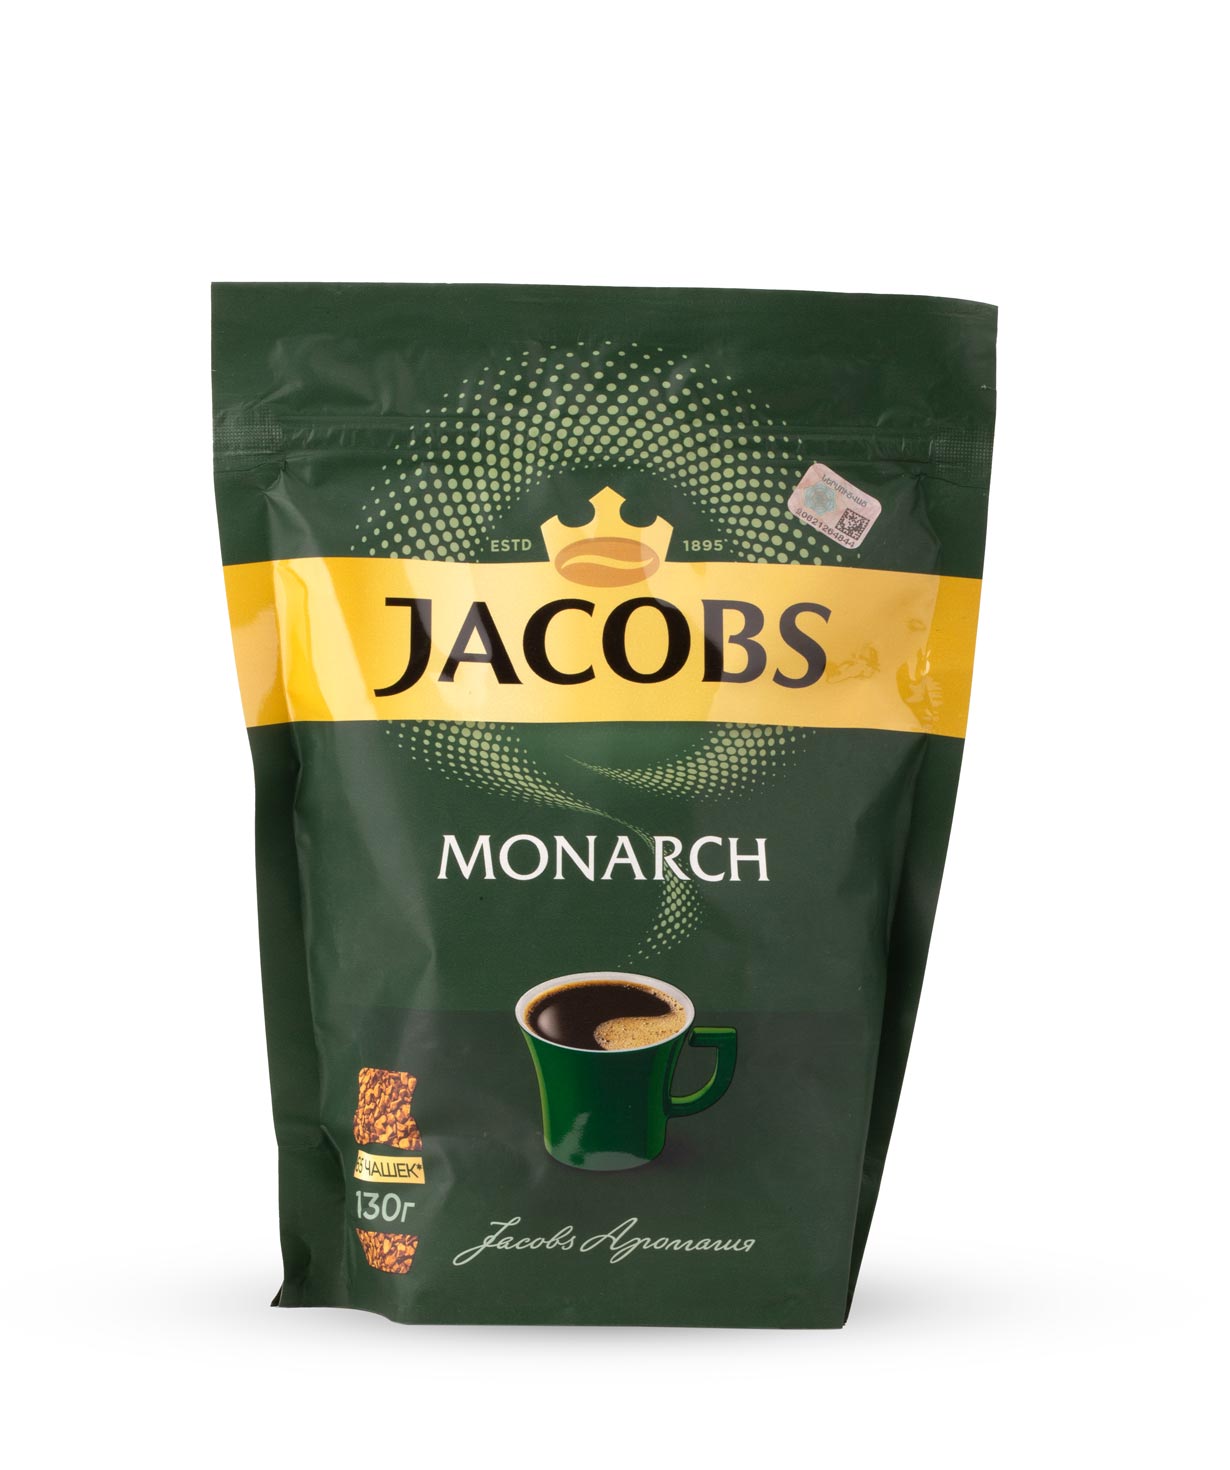 Լուծվող սուրճ «Jacobs Monarch» 130գ